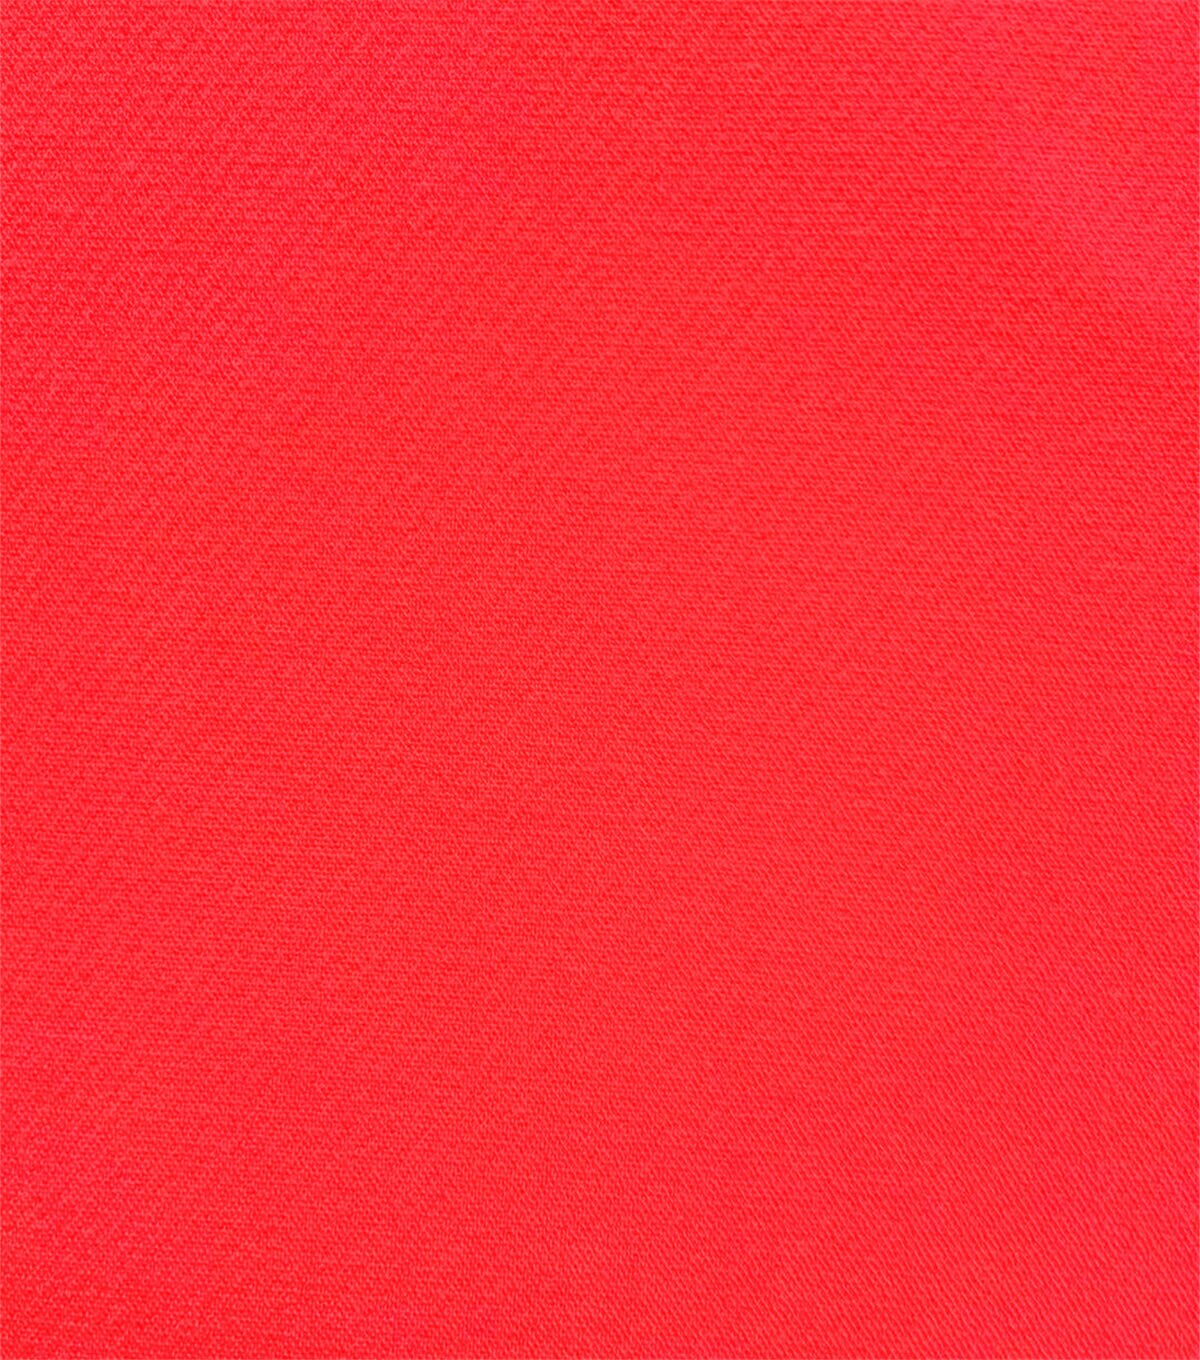 Sportswear Stretch Poly Rayon Spandex Twill Fabric | JOANN